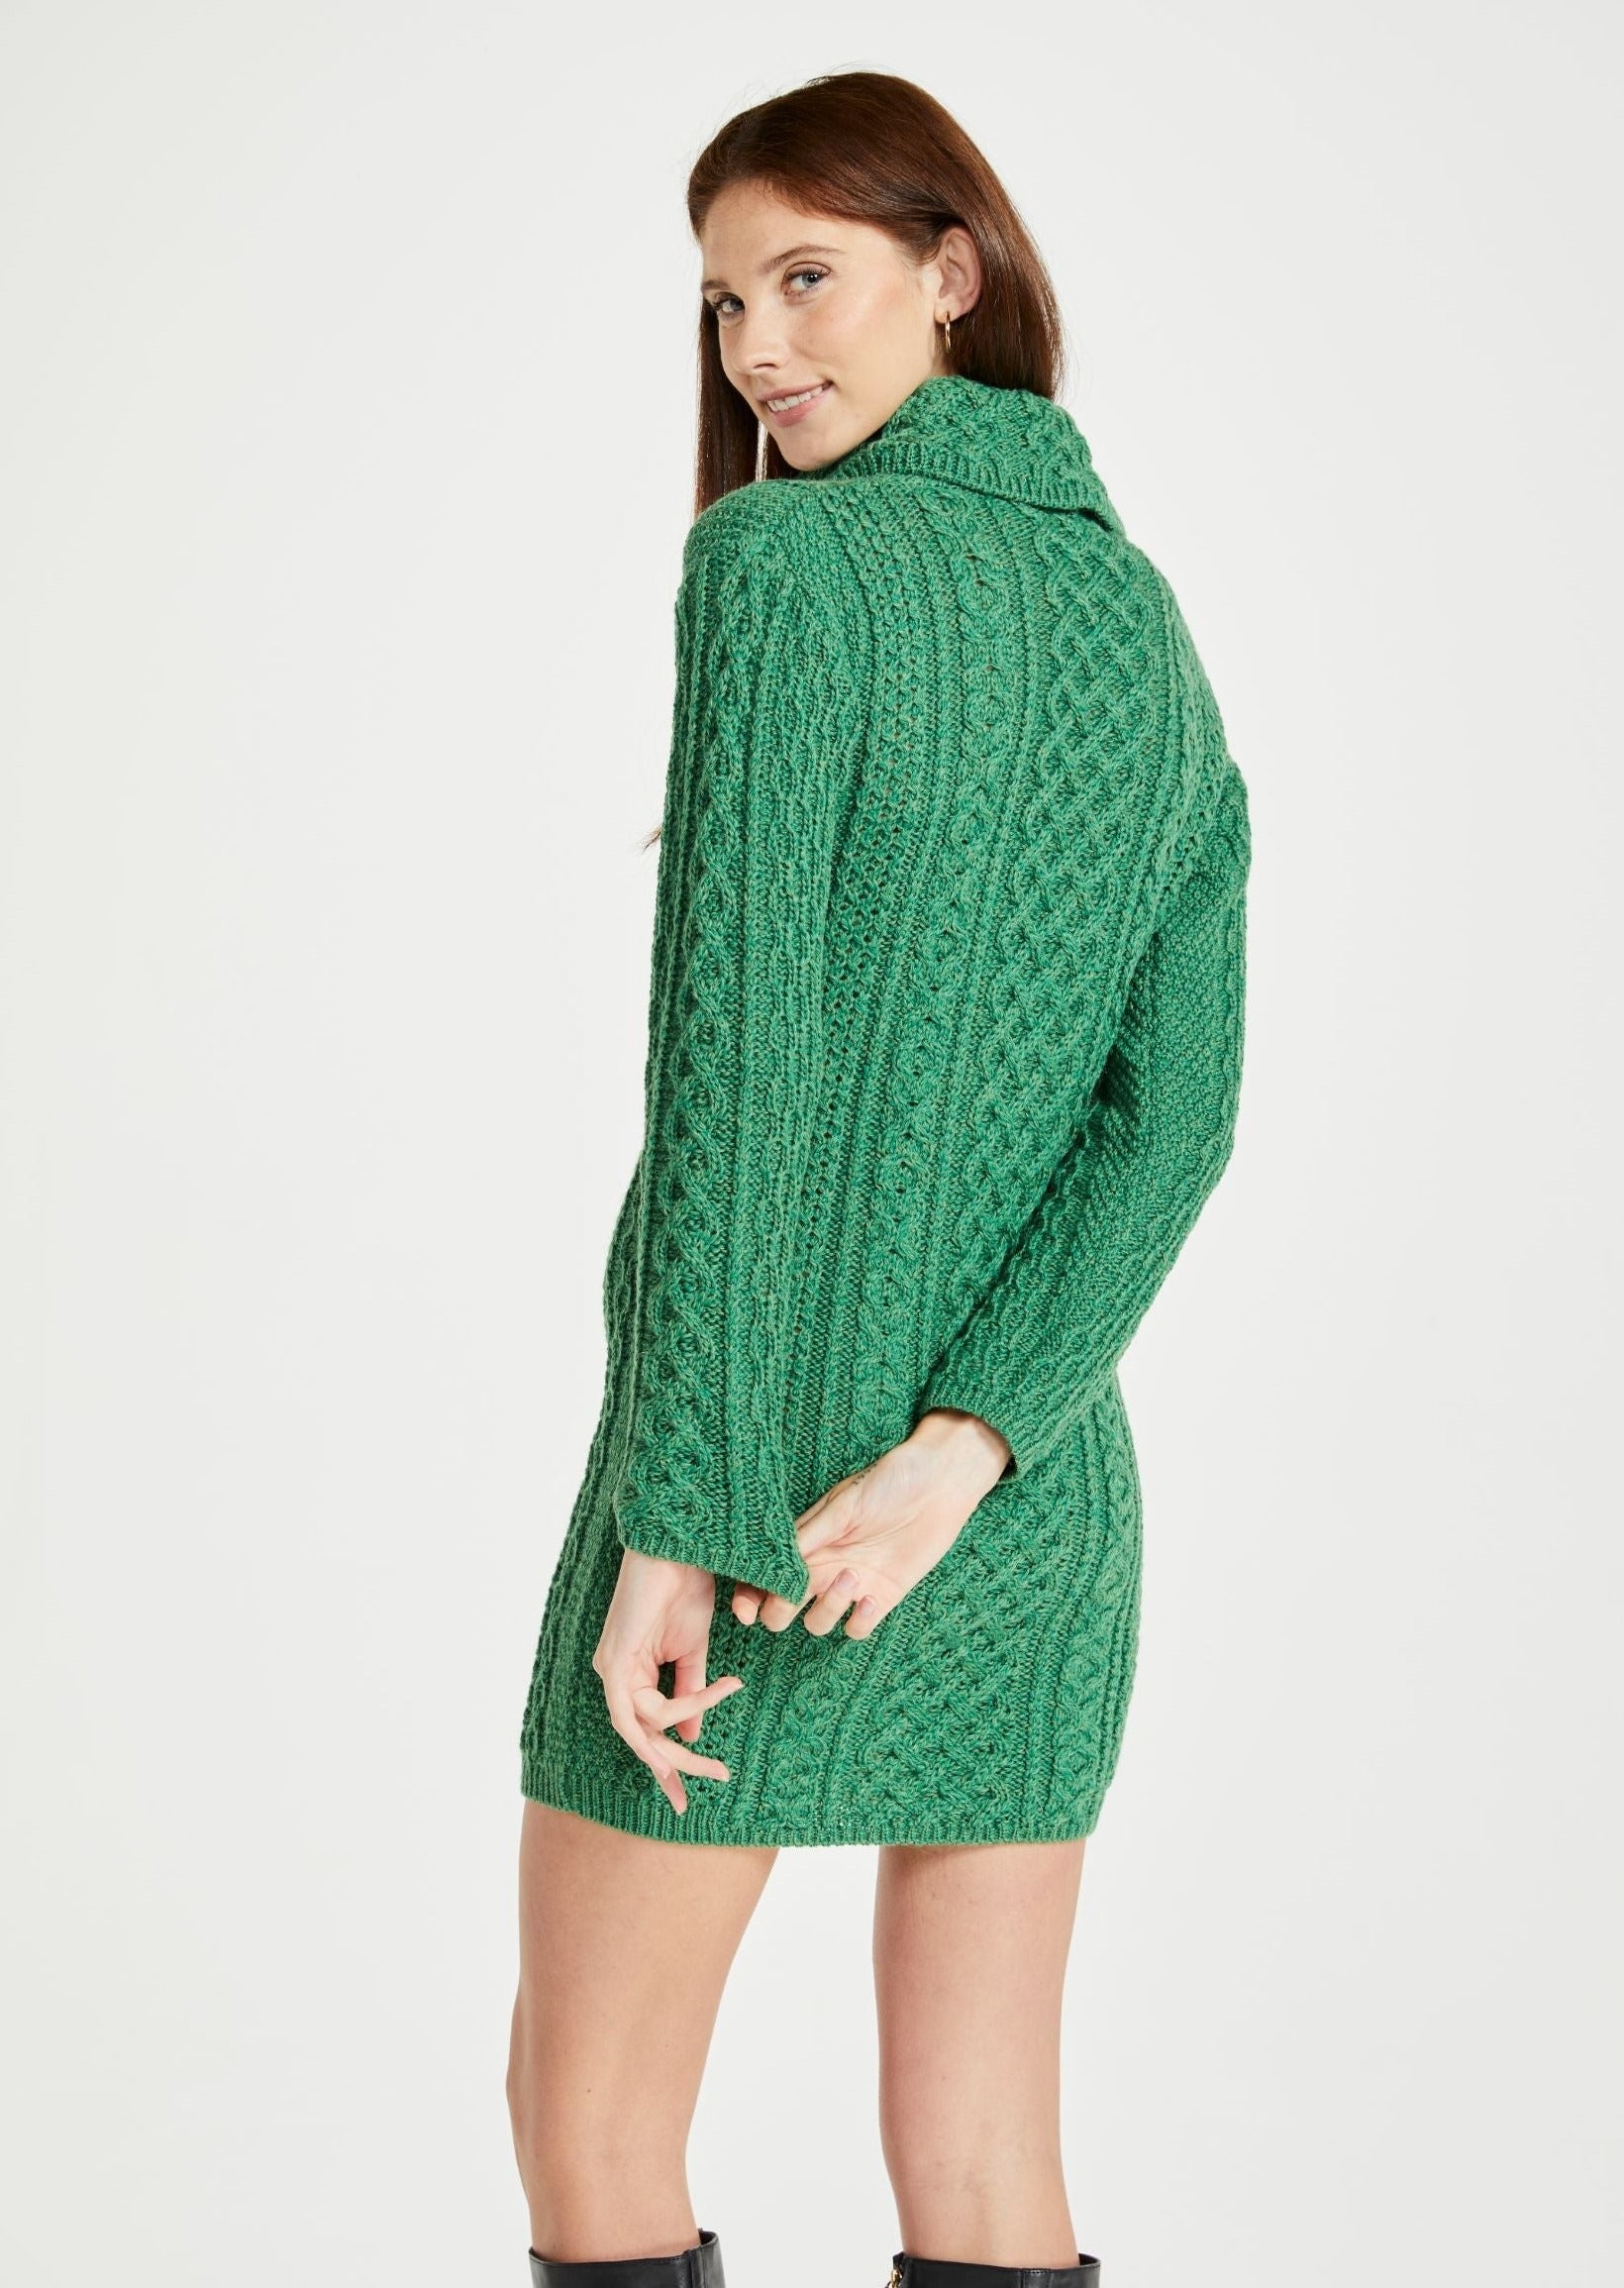 Aran Woollen Mills Dress - Green